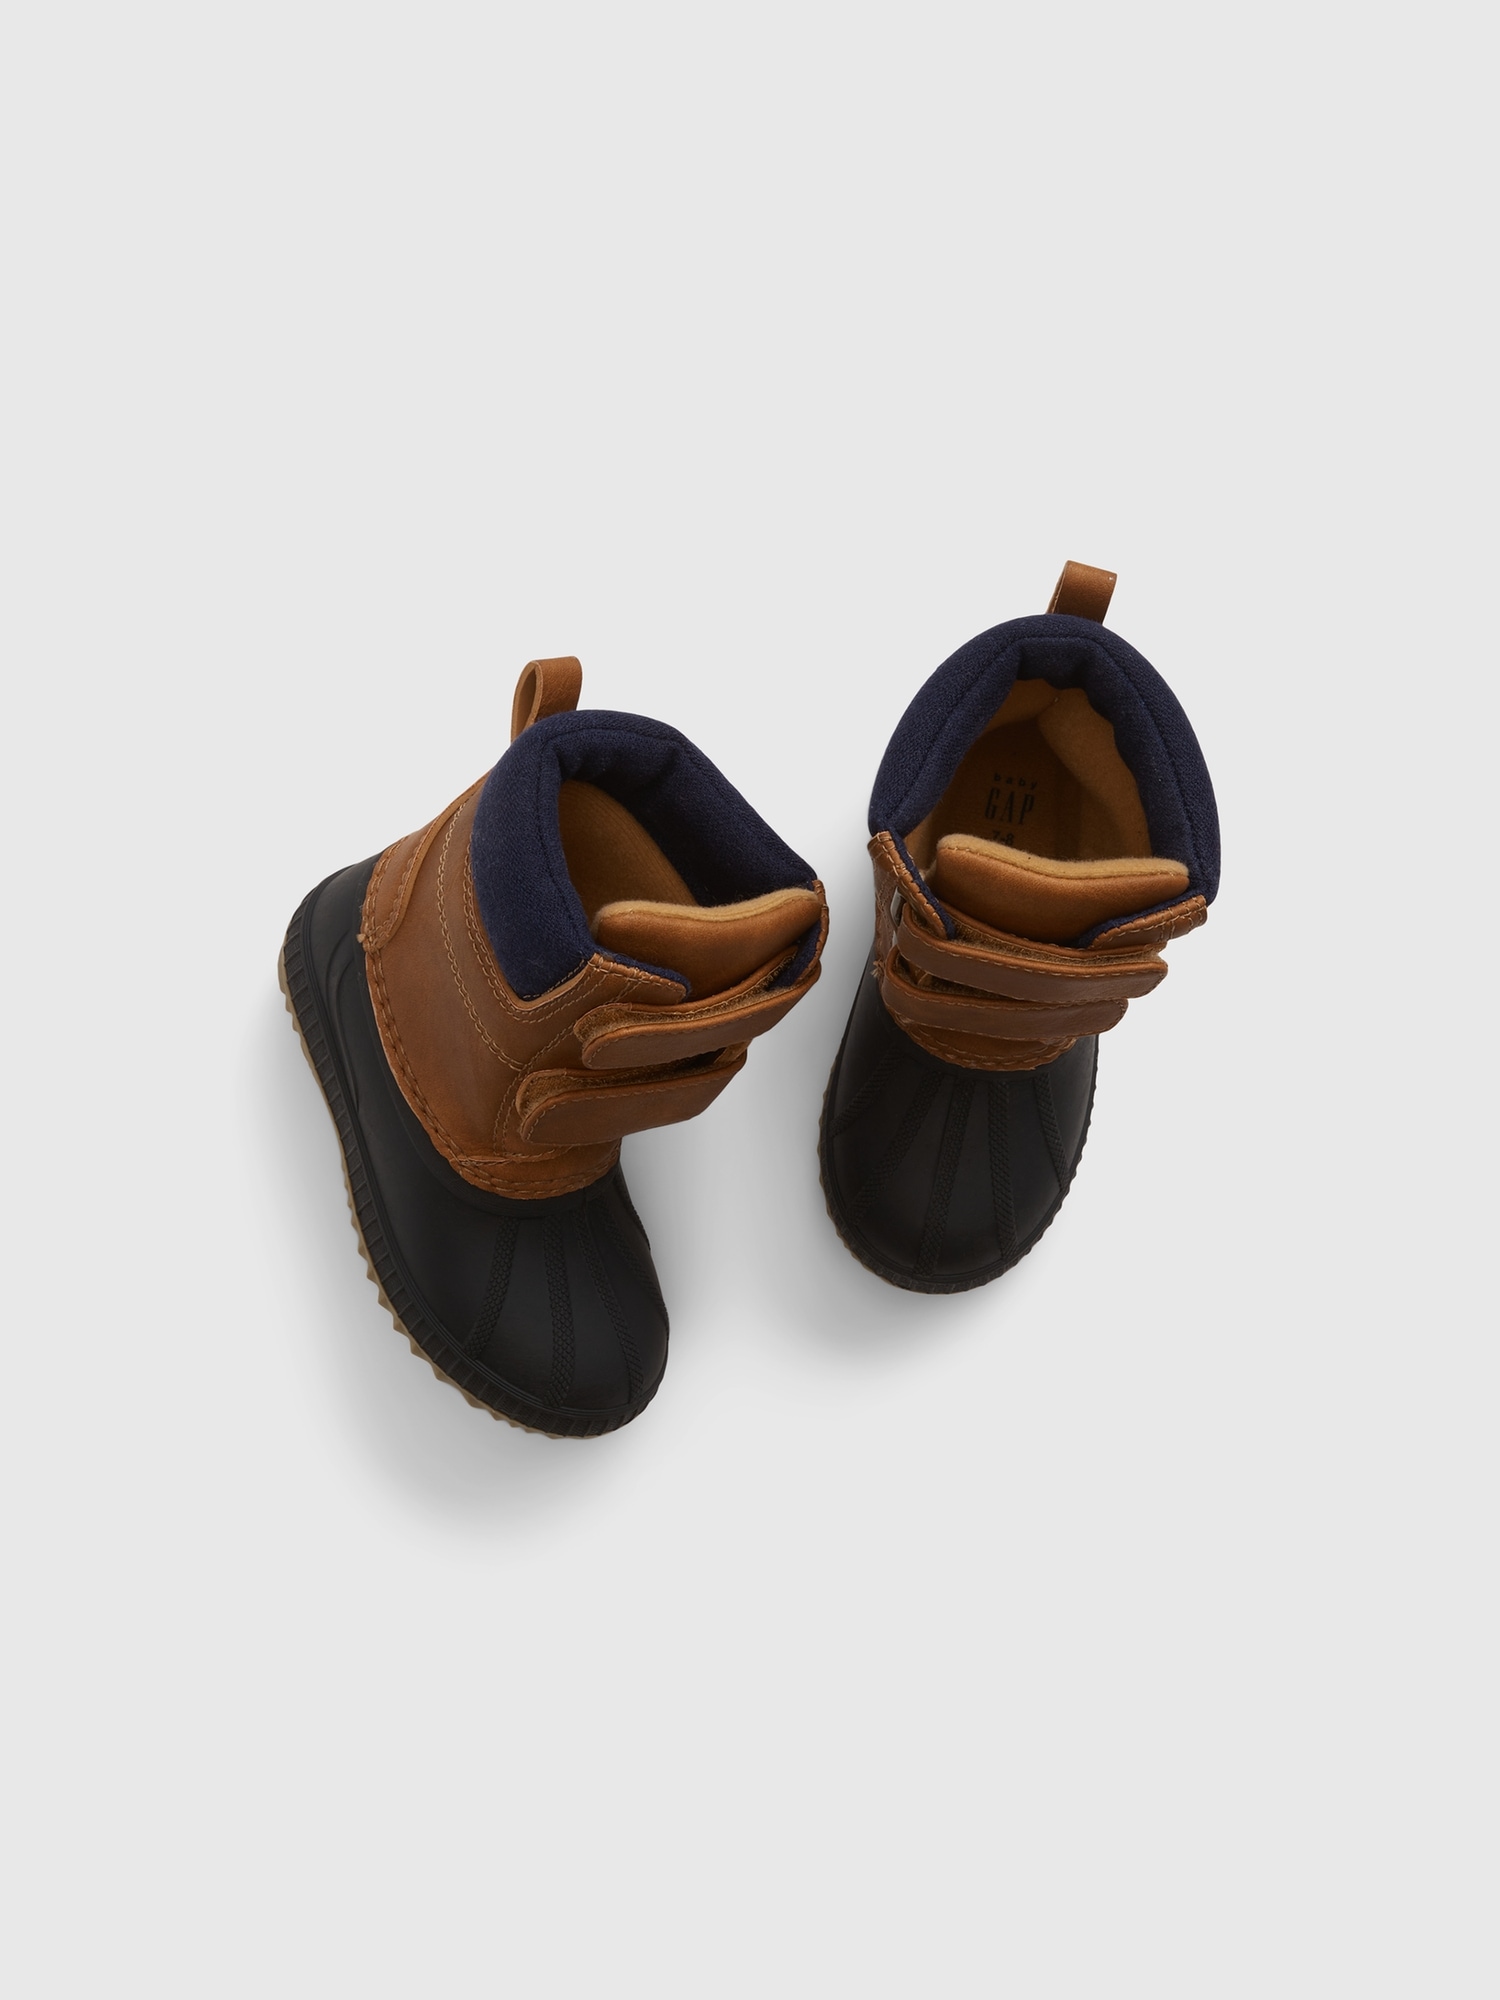 Toddler Duck Boots | Gap